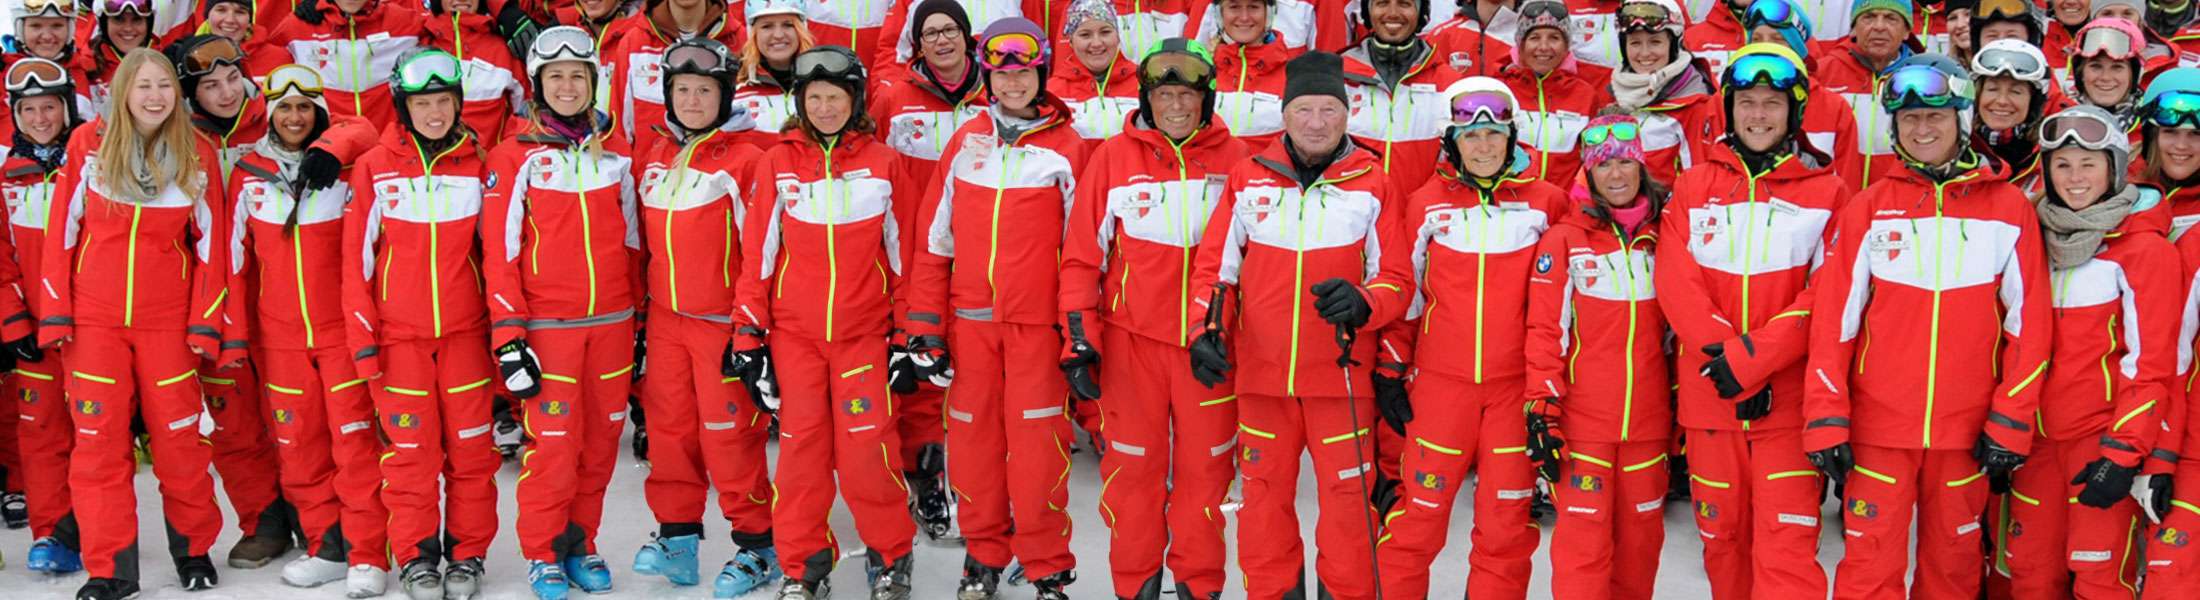 Ski Instructors